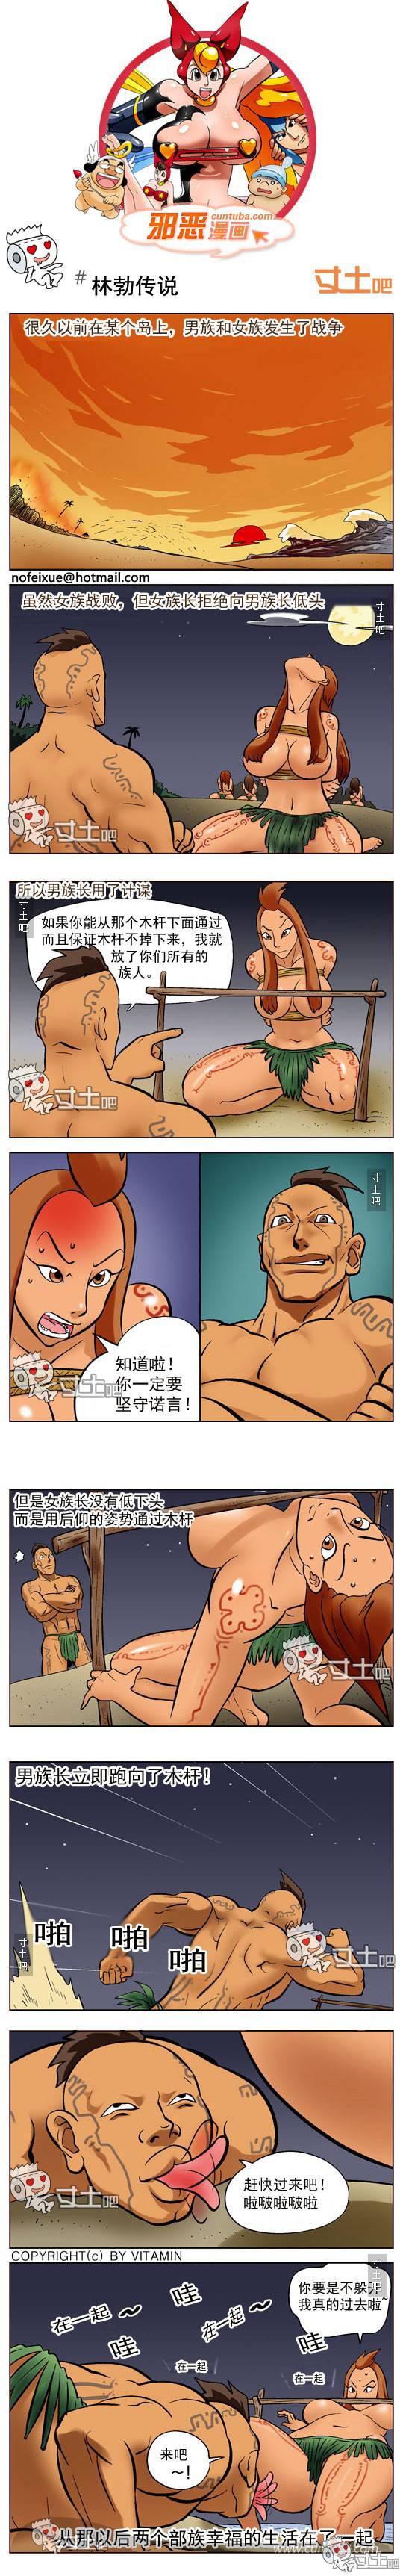 邪恶漫画爆笑囧图第262刊：模拟的姿势